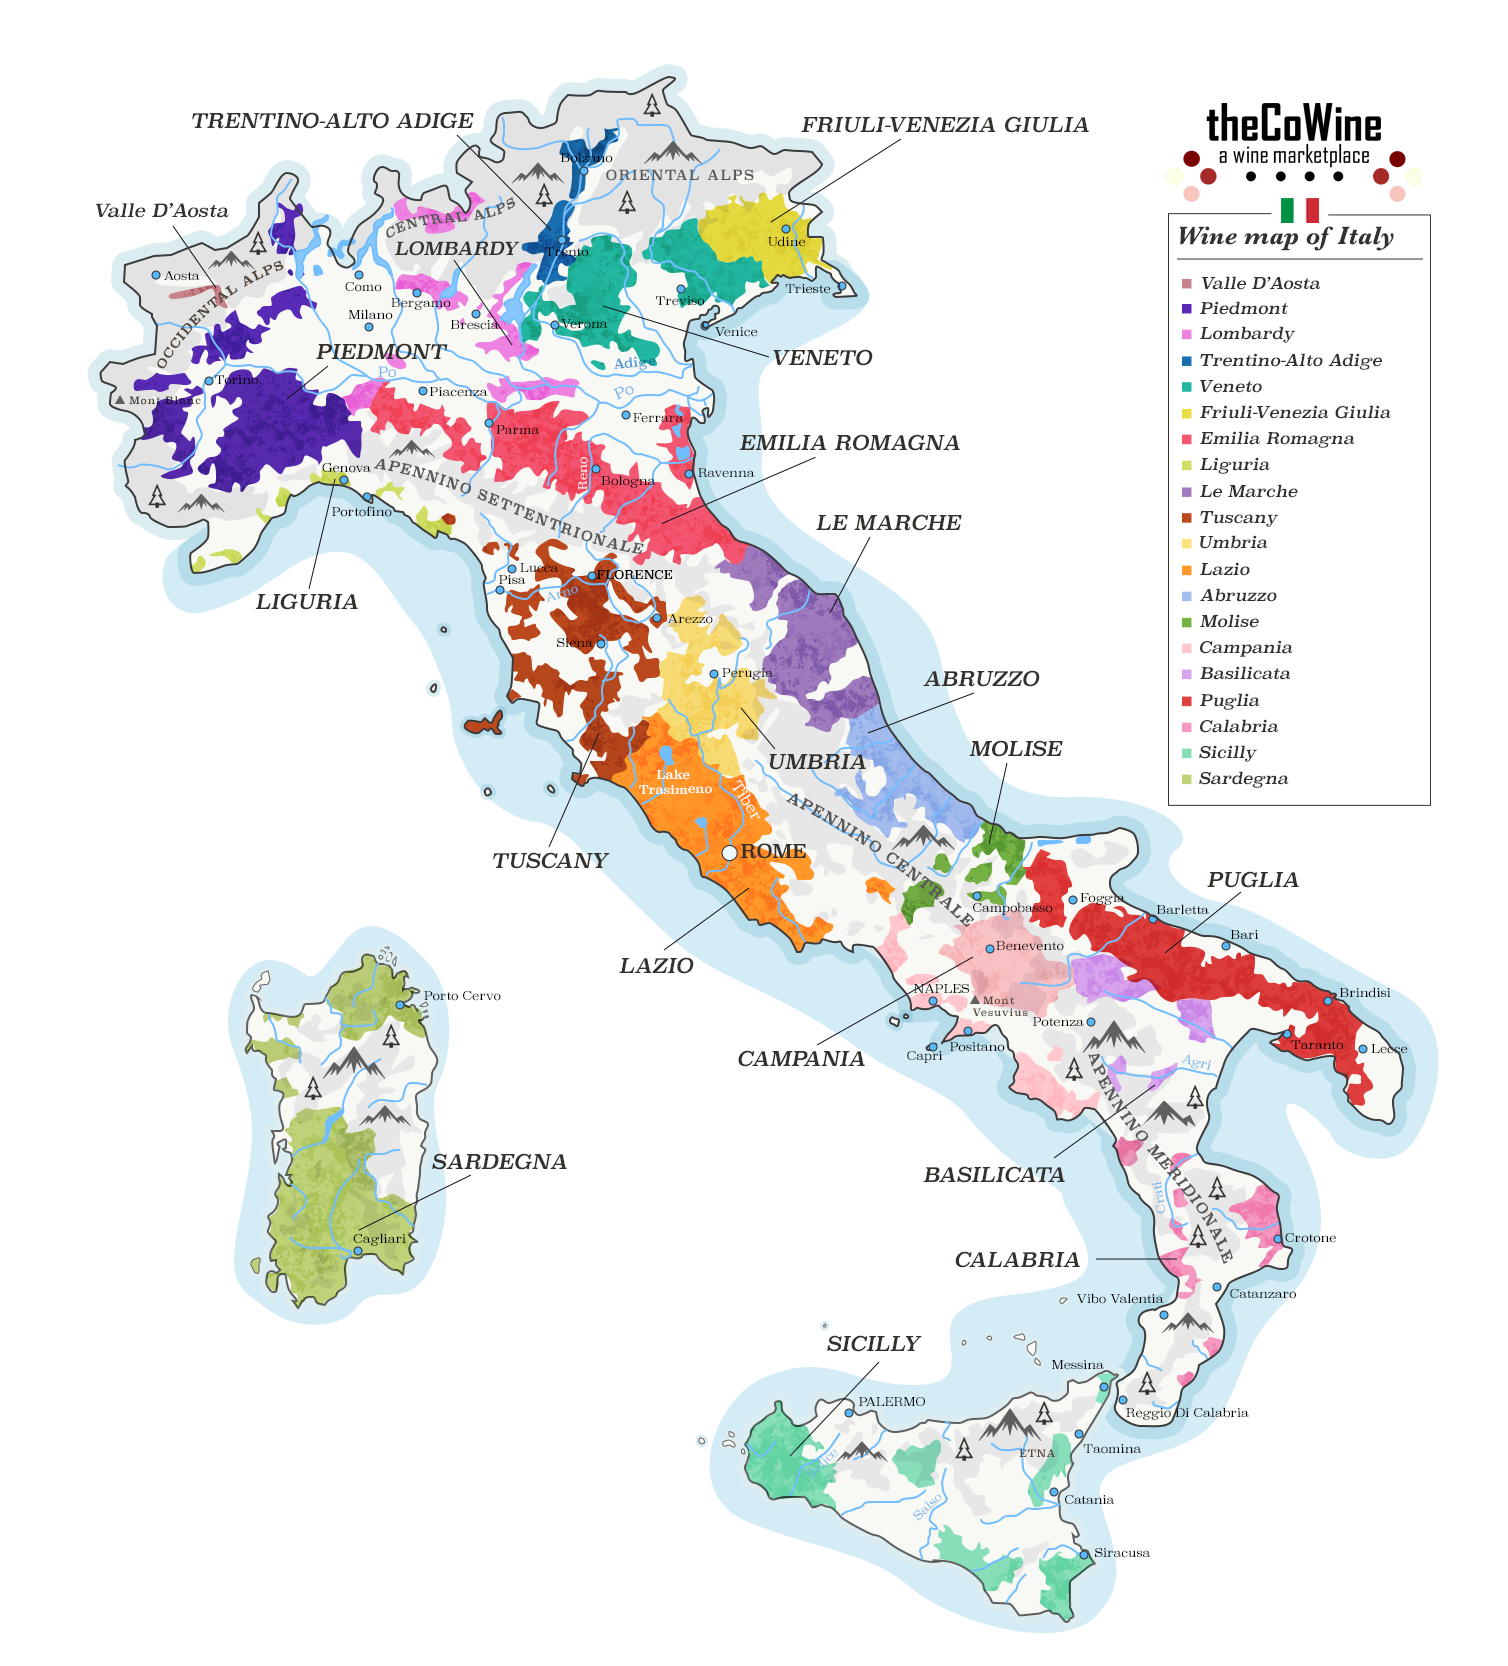 The Wineregions of Italy